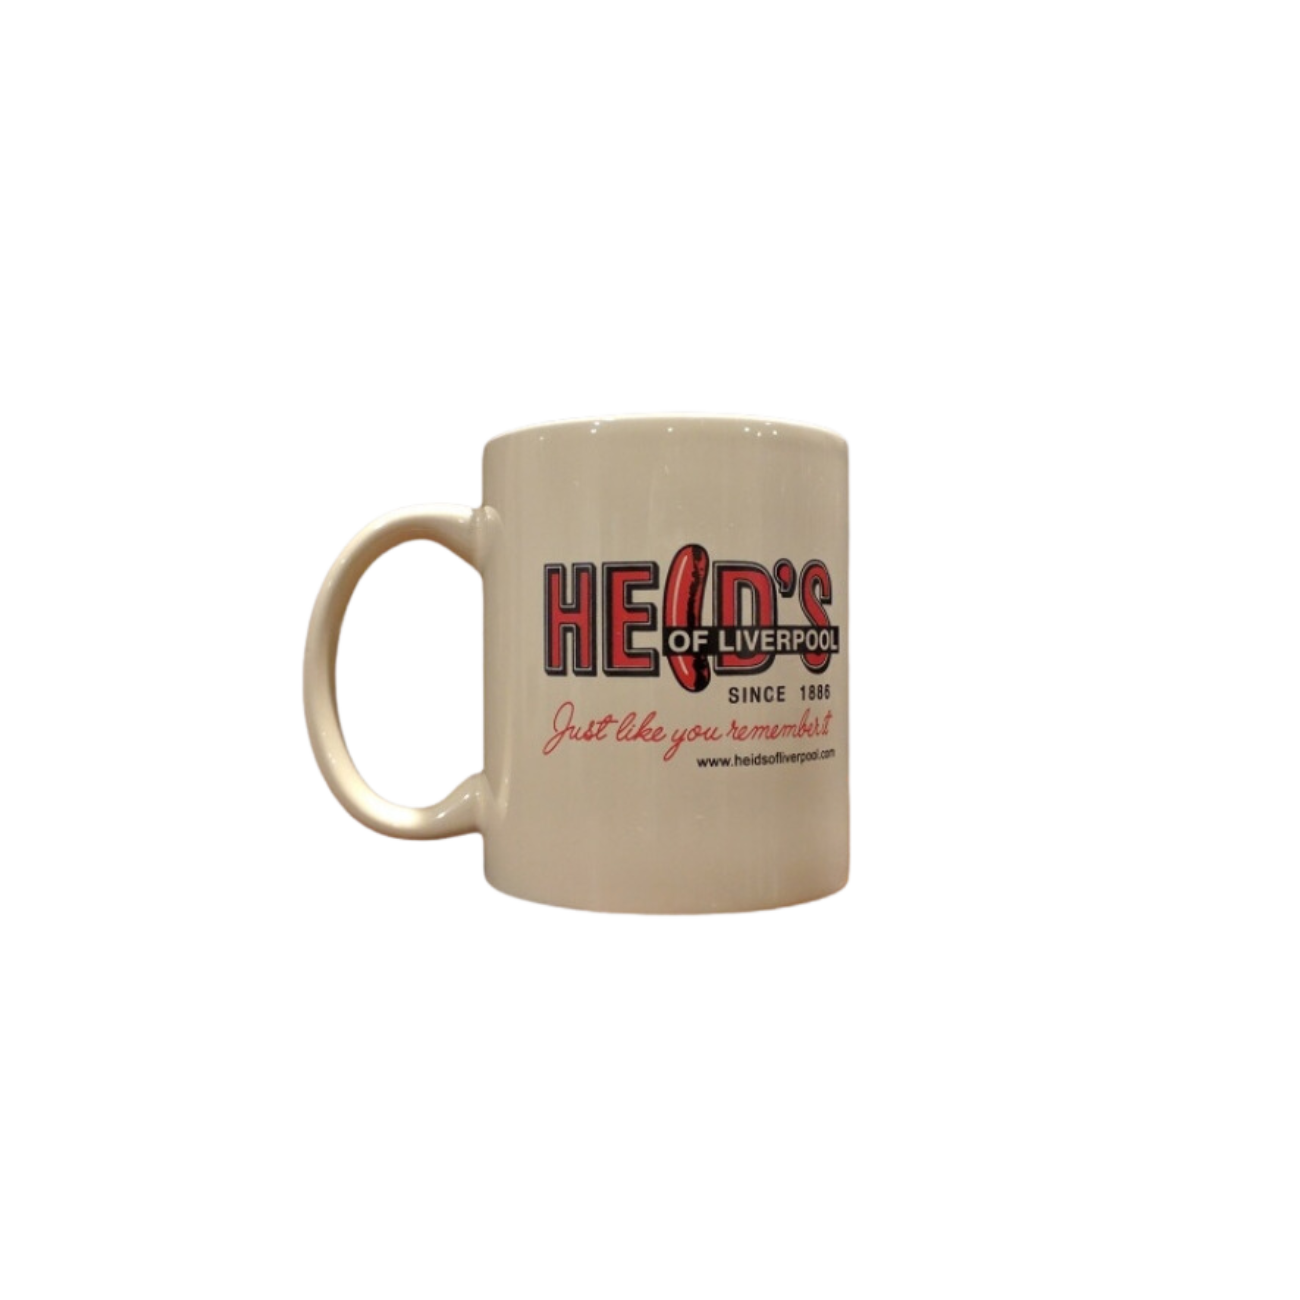 Heid's Coffee Mug